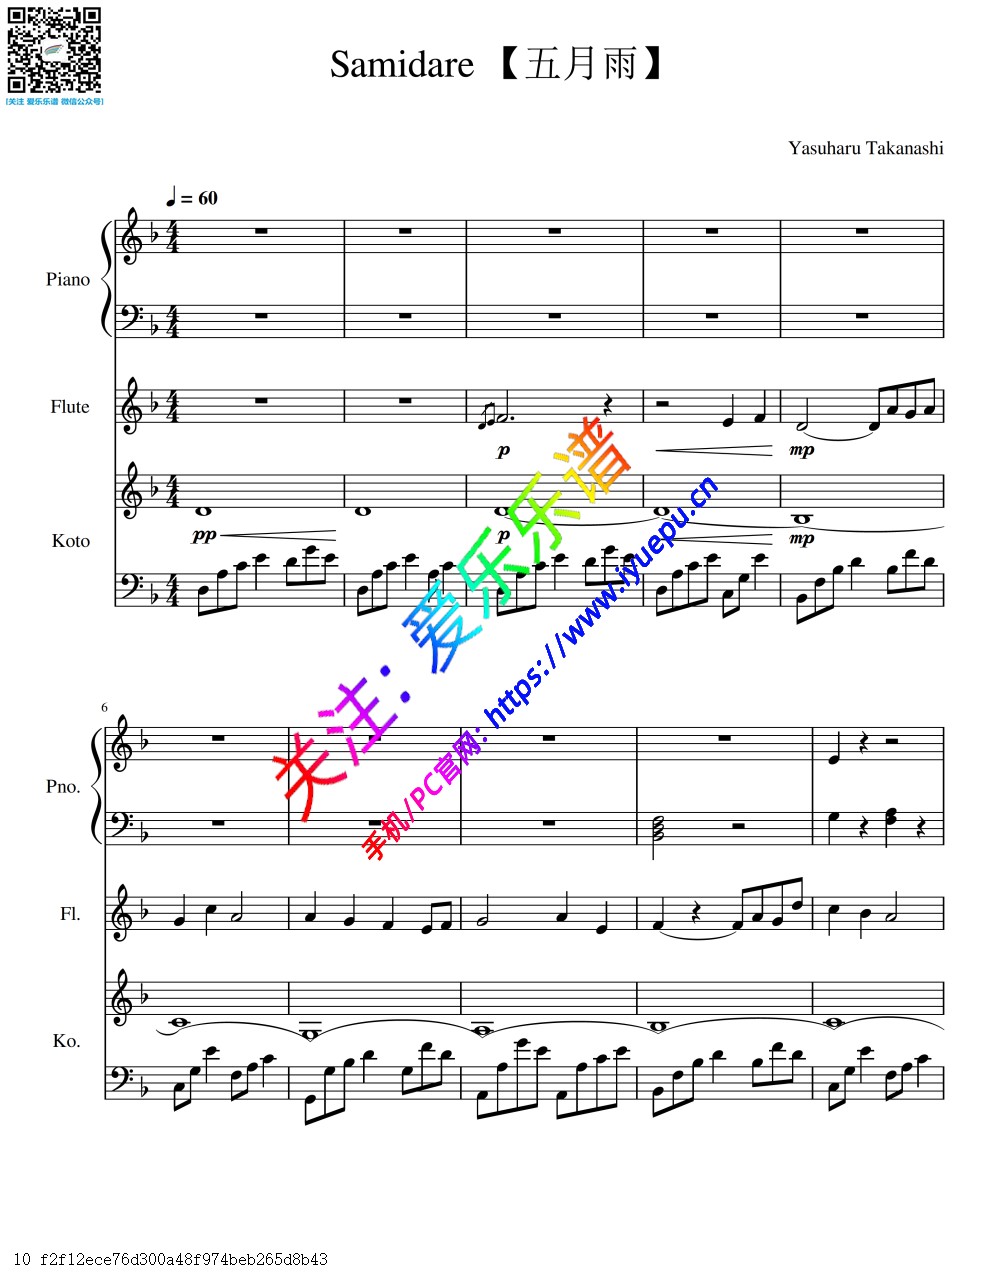 火影忍者 插曲 五月雨 Samidare - Naruto OST 钢琴长笛古筝三重奏-总谱与分谱 乐谱曲谱总谱分谱伴奏音乐在线预览试听下载